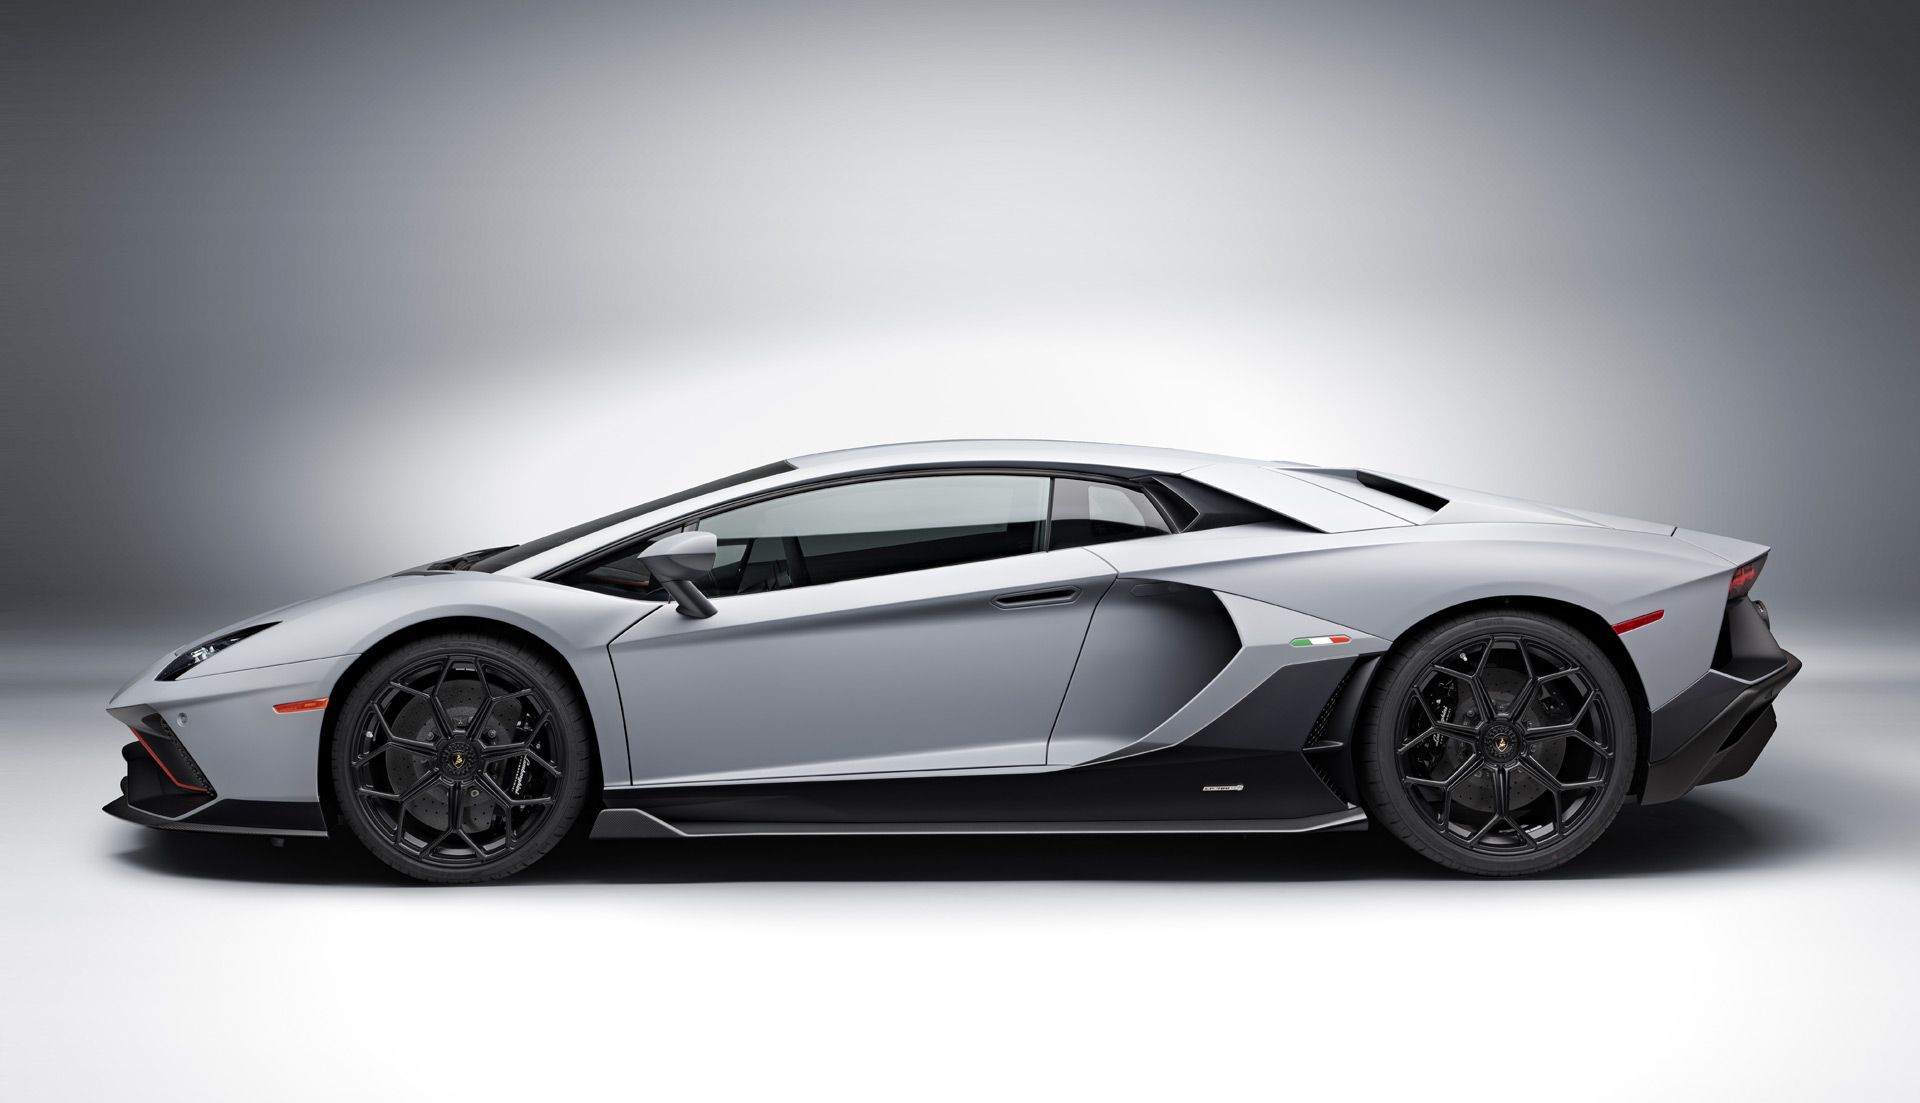 نمای جانبی Lamborghini Aventador Ultimate  لامبورگینی اونتادور اولتیمای